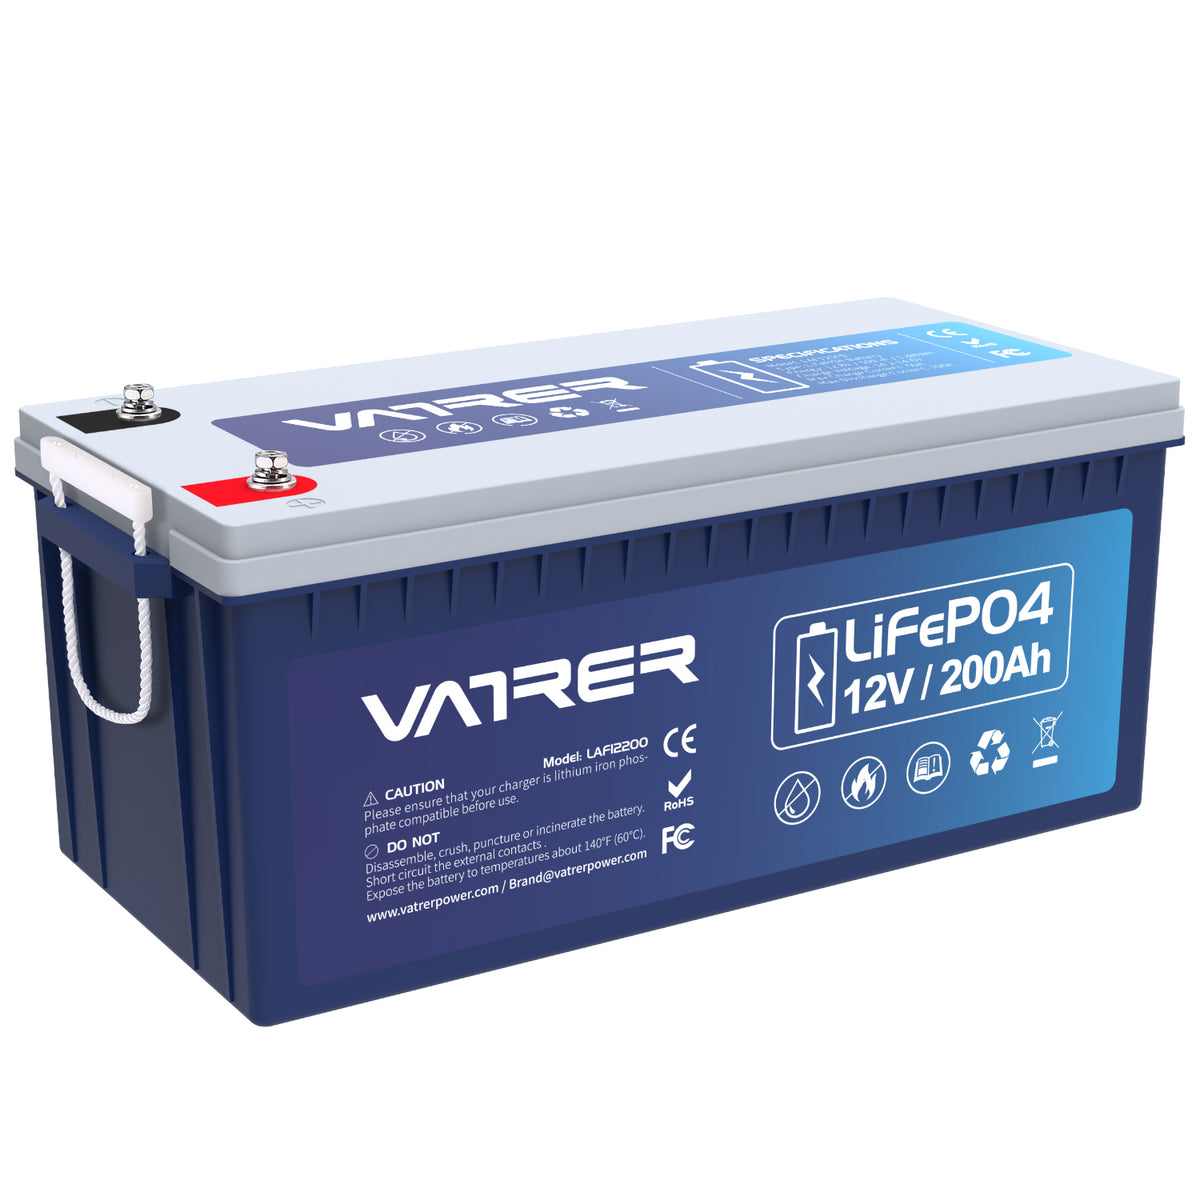 Batterie au lithium 12 V 200 Ah LiFePO4, BMS 100 A intégré et coupure basse température.